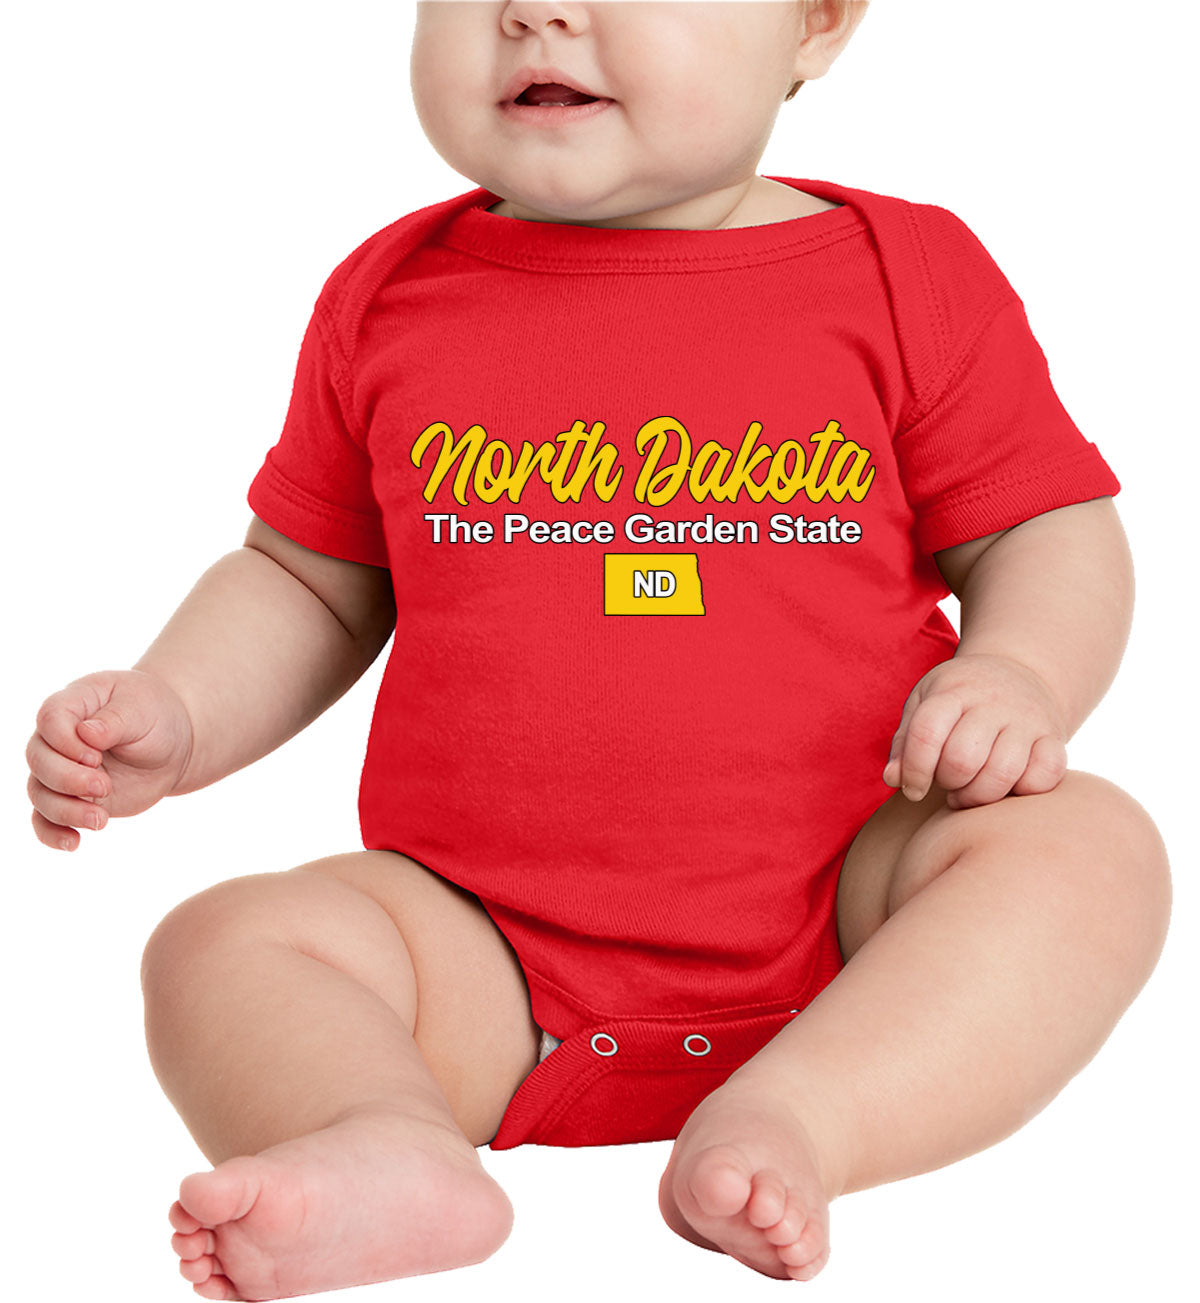 North Dakota The Peace Garden State Baby Onesie